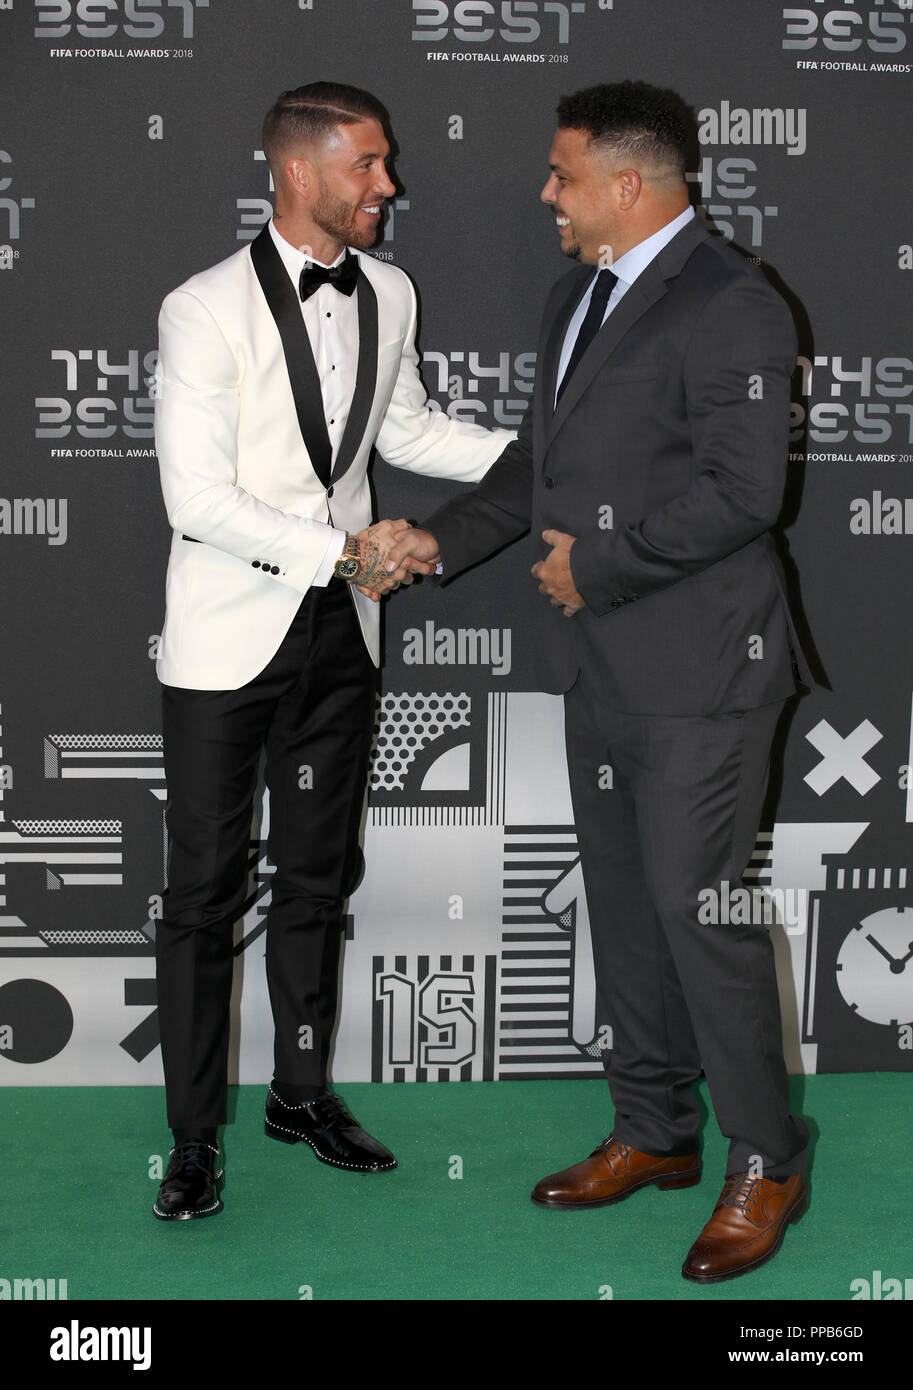 Ronaldo (rechts) und Sergio Ramos kommen für die besten FIFA-Fußballpreise 2018 in der Royal Festival Hall, London, an. Stockfoto